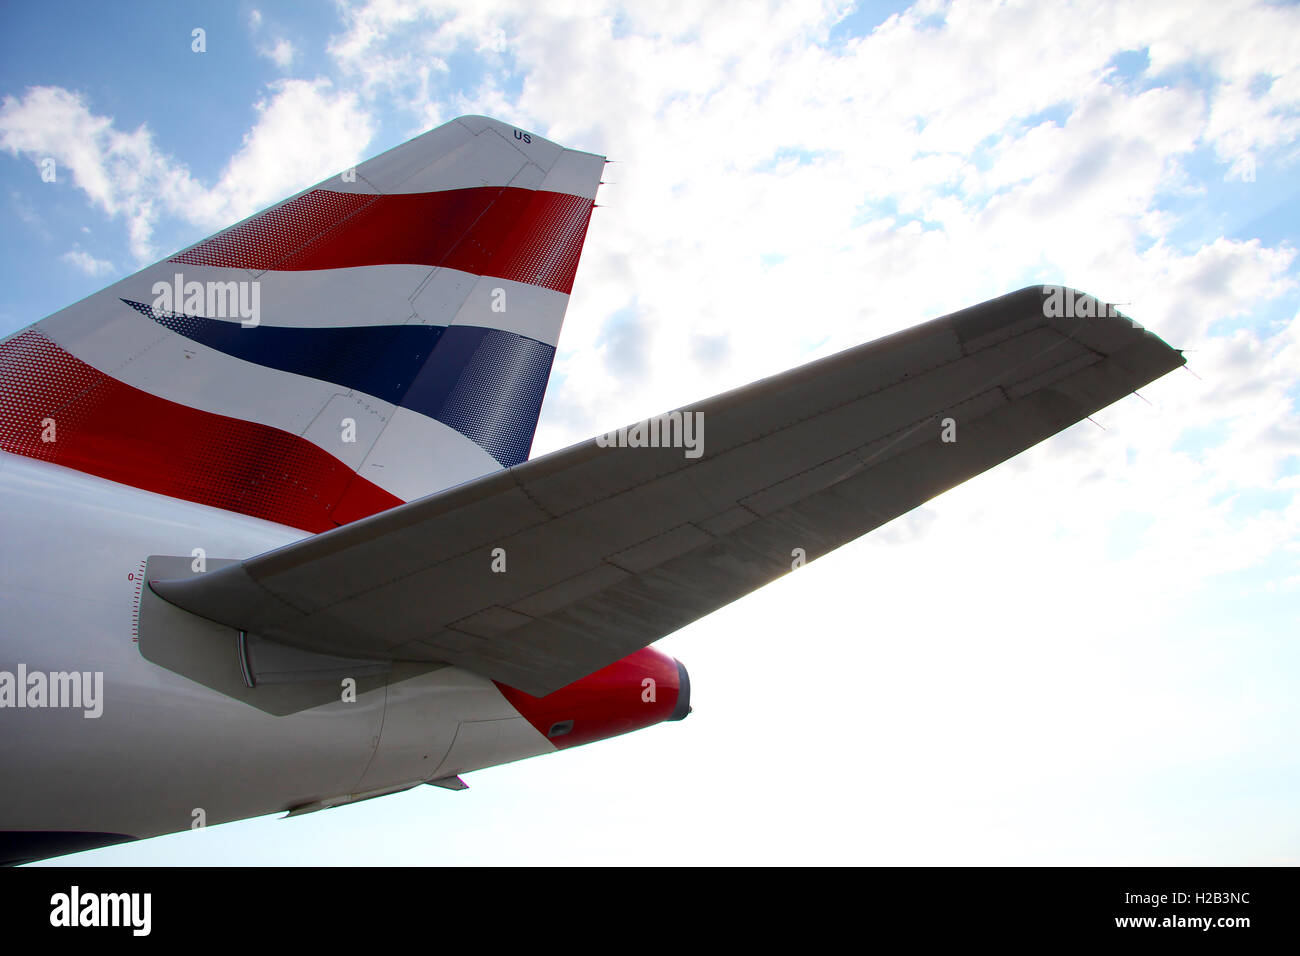 british airways airplane tail Stock Photo